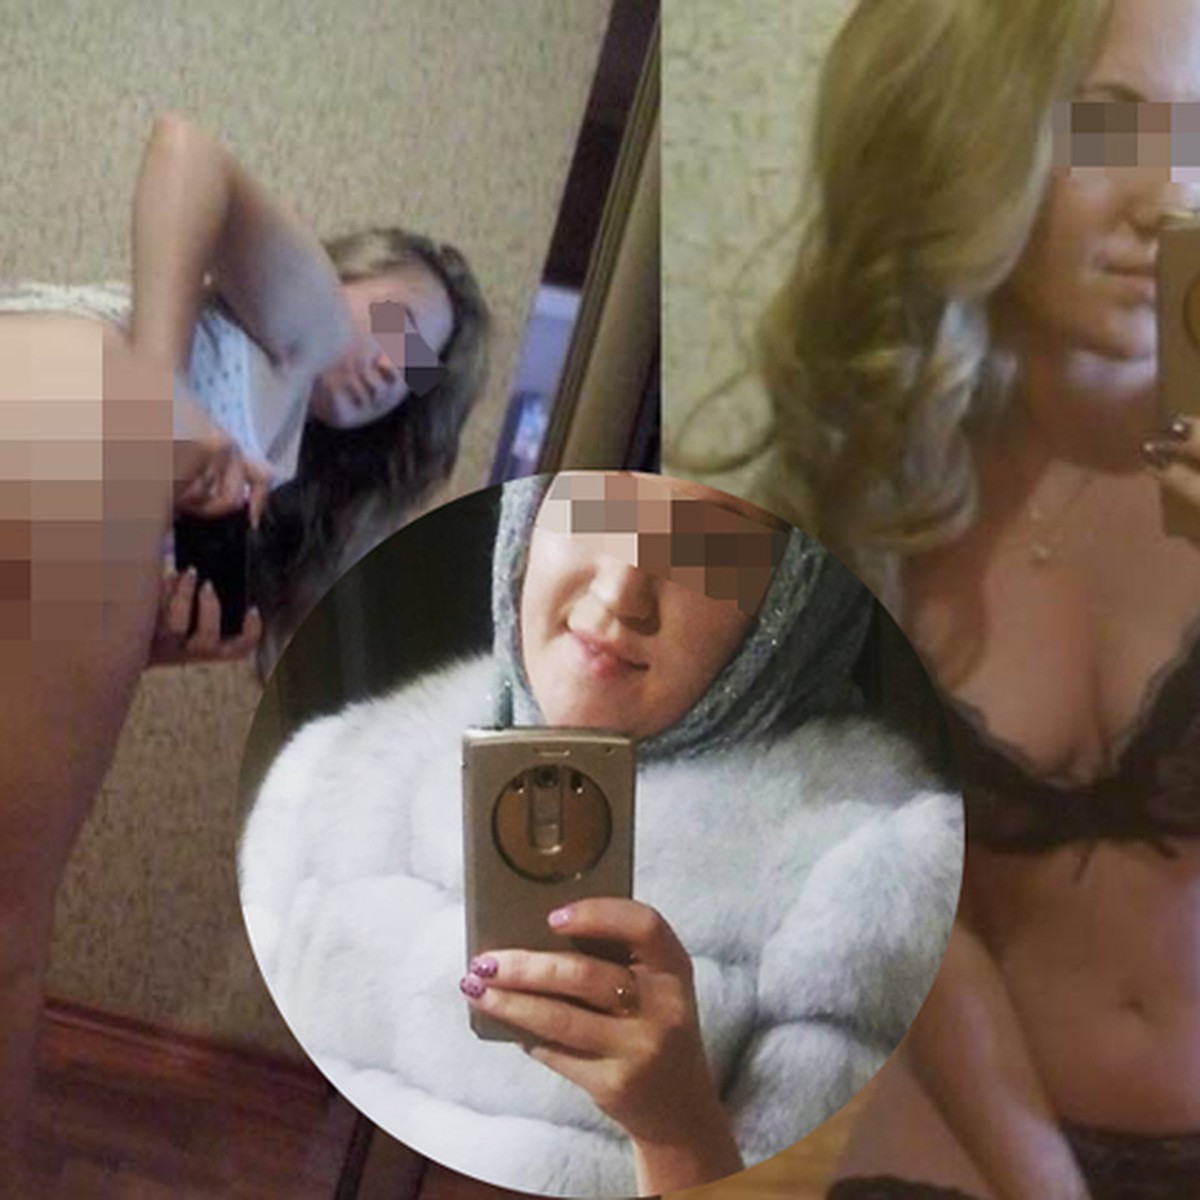 Дана Борисова порно фото. Скандальные фото голых знаменитостей